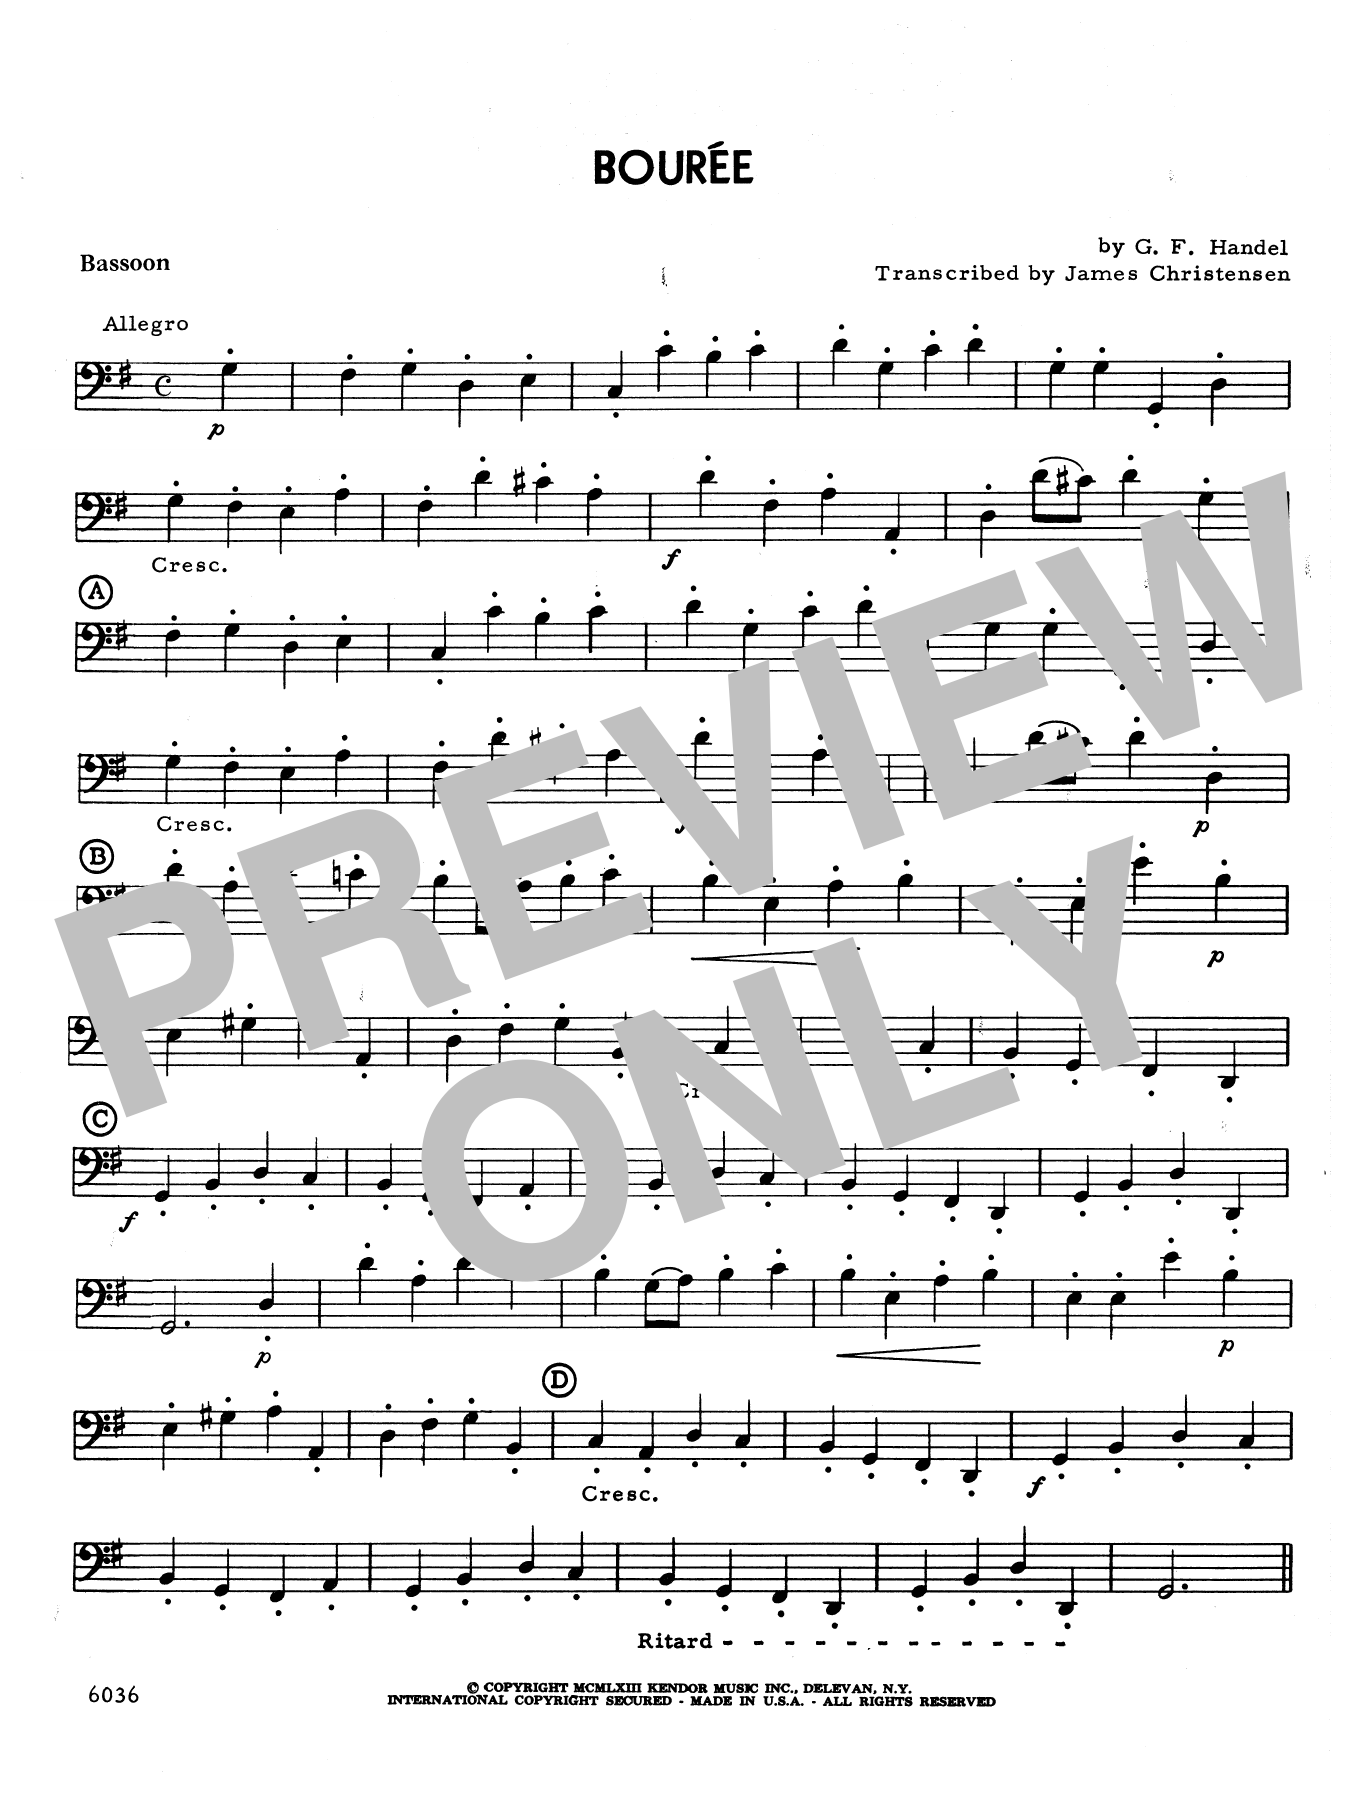 Download James Christensen Bourée - Bassoon Sheet Music